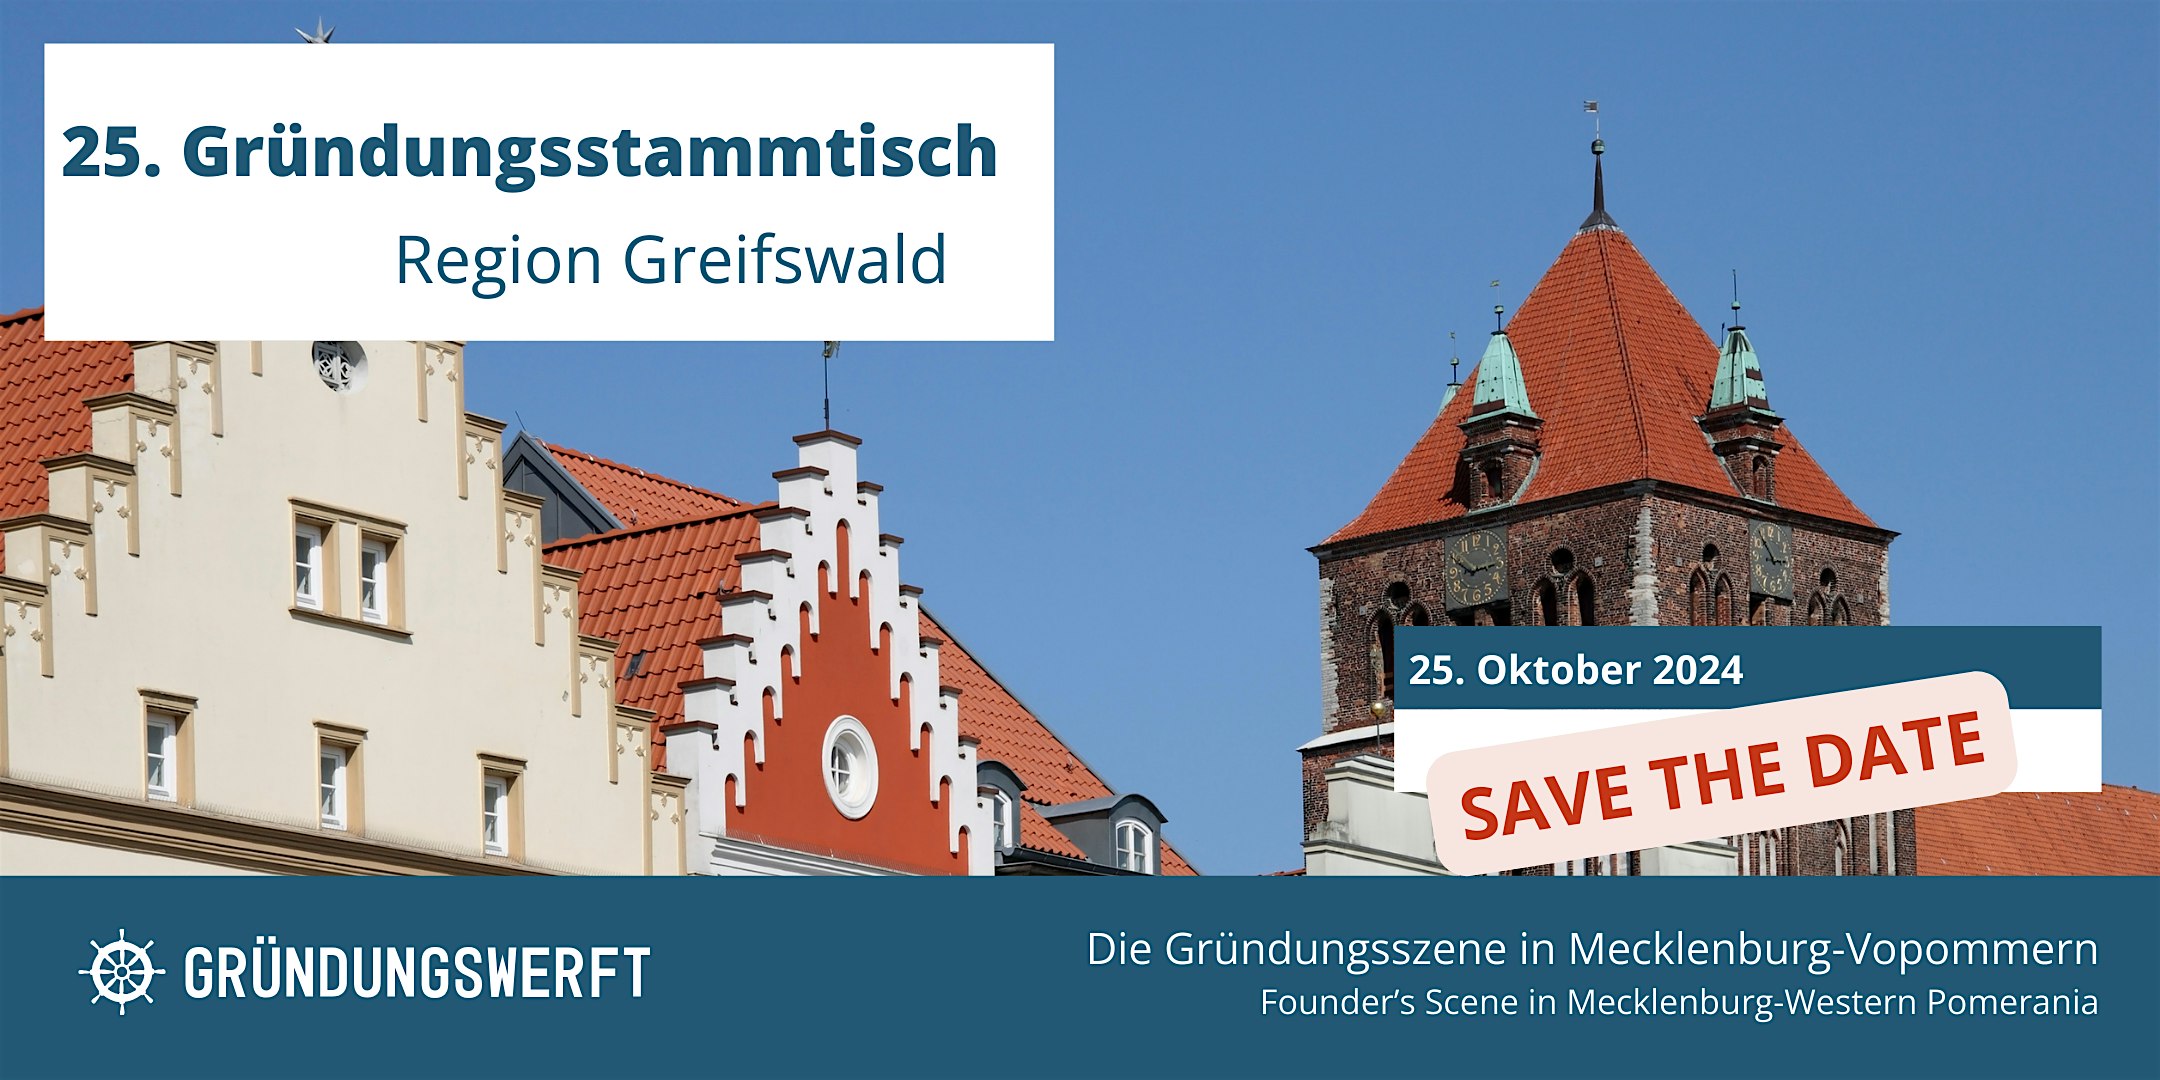 Veranstaltungsbild für die Veranstaltung 25. Gründungsstammtisch Greifswald SAVE THE DATE